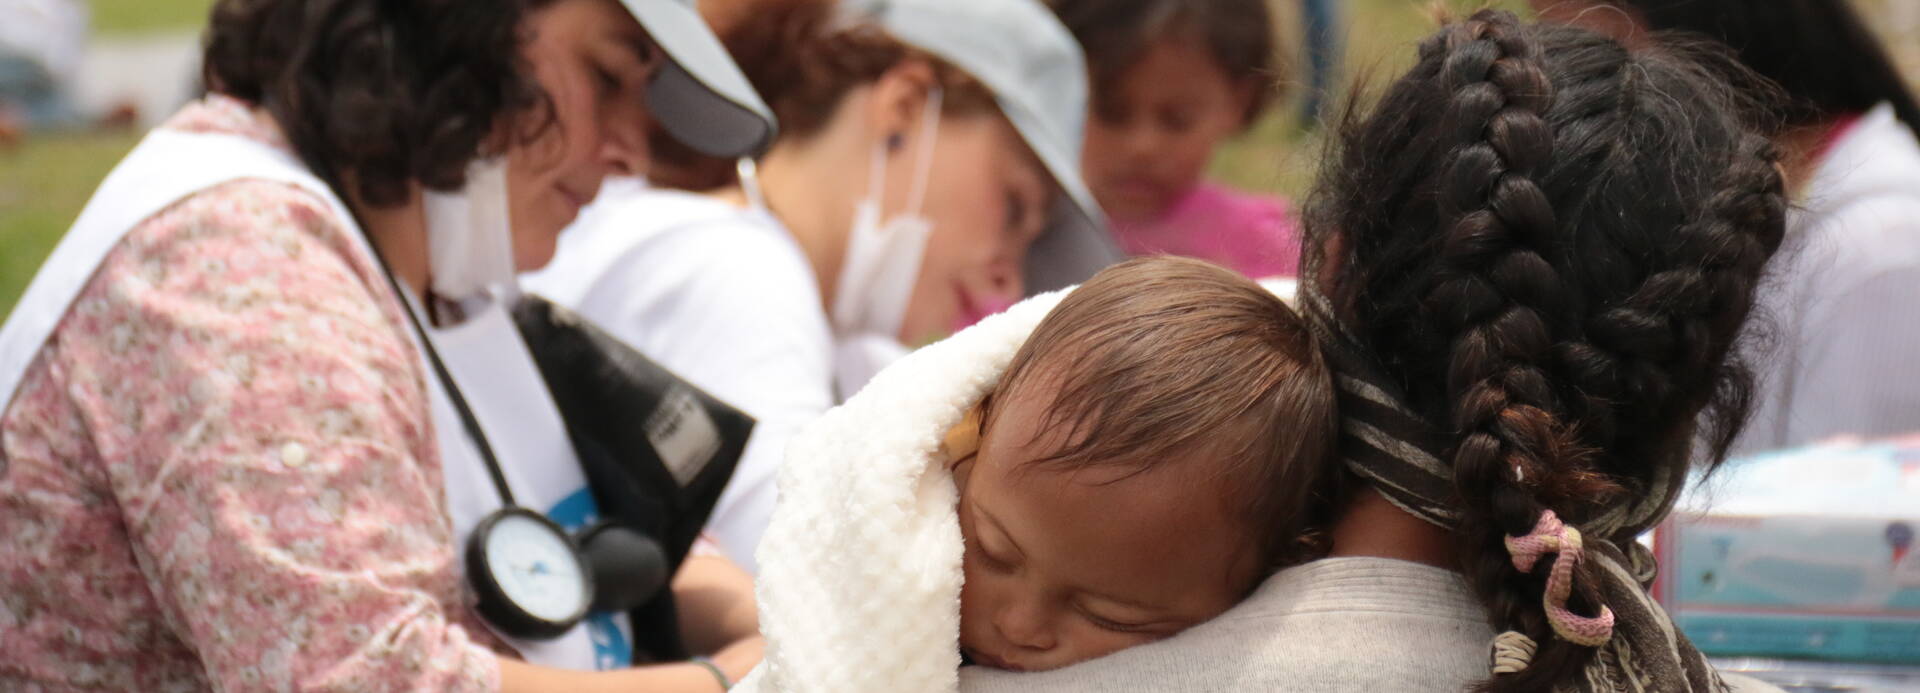 Medizinische Versorgung von Vertriebenen in Venezuela